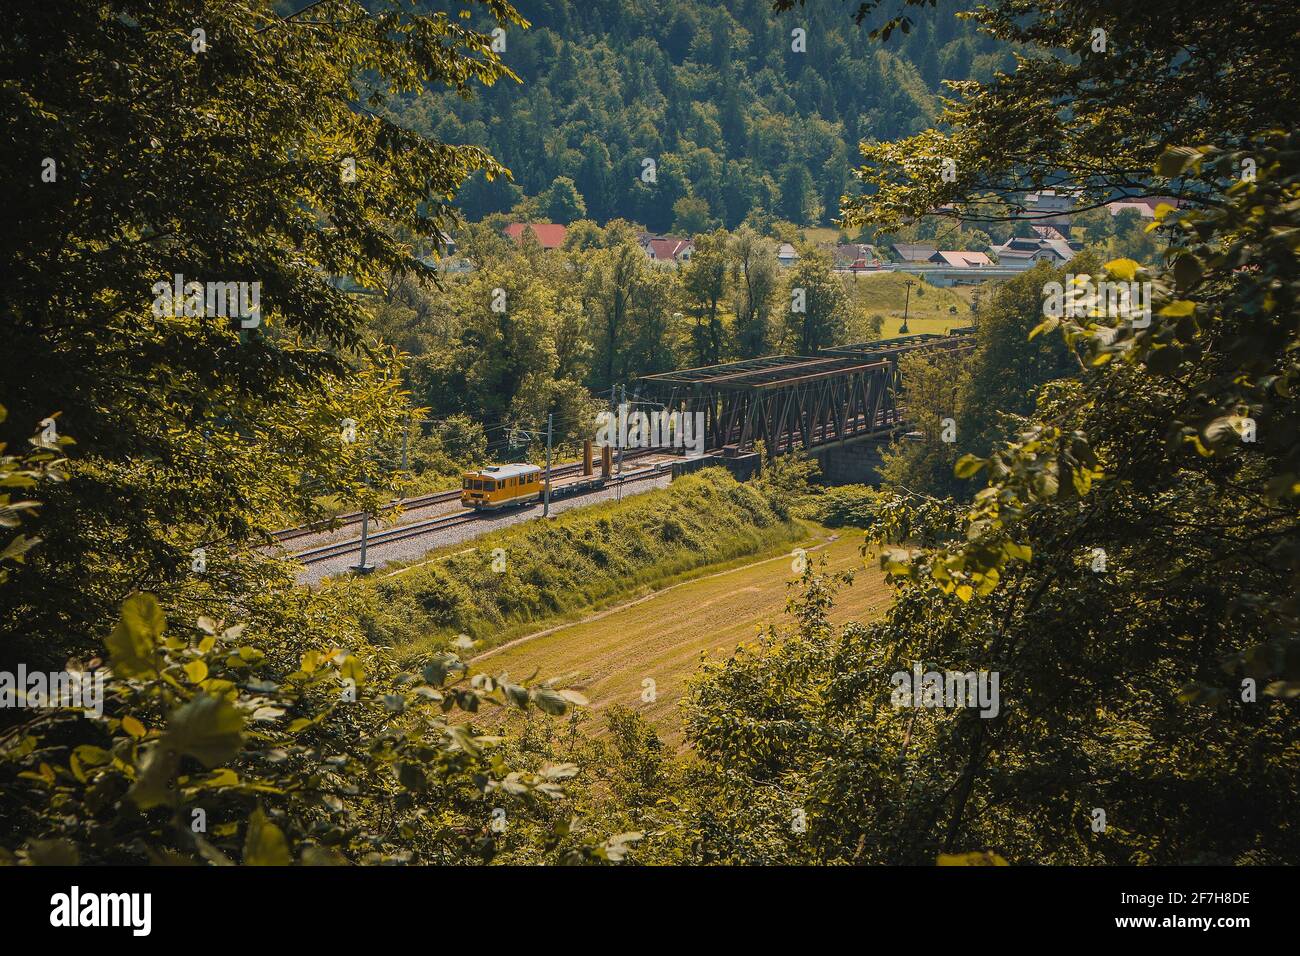 Gelber Arbeitszug mit Draisine fährt auf einer zweigleisigen Eisenbahnlinie weg von einer Metallbrücke. Romantischer Blick durch ein Loch im Laub. Stockfoto